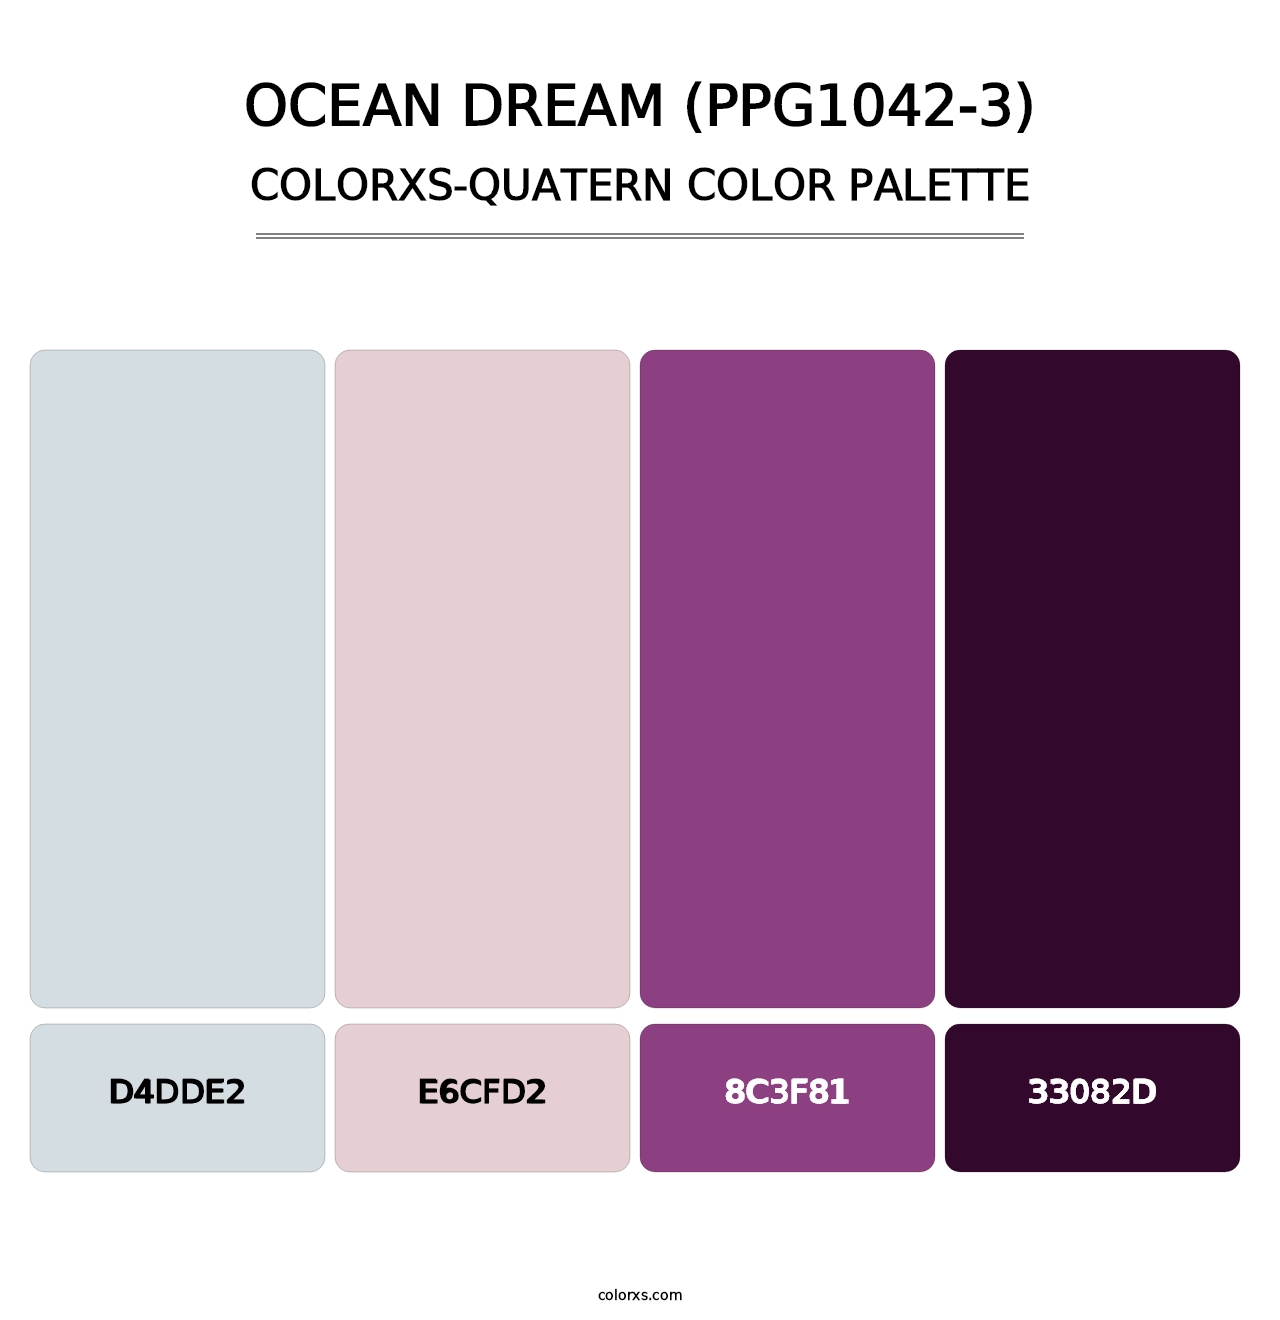 Ocean Dream (PPG1042-3) - Colorxs Quatern Palette